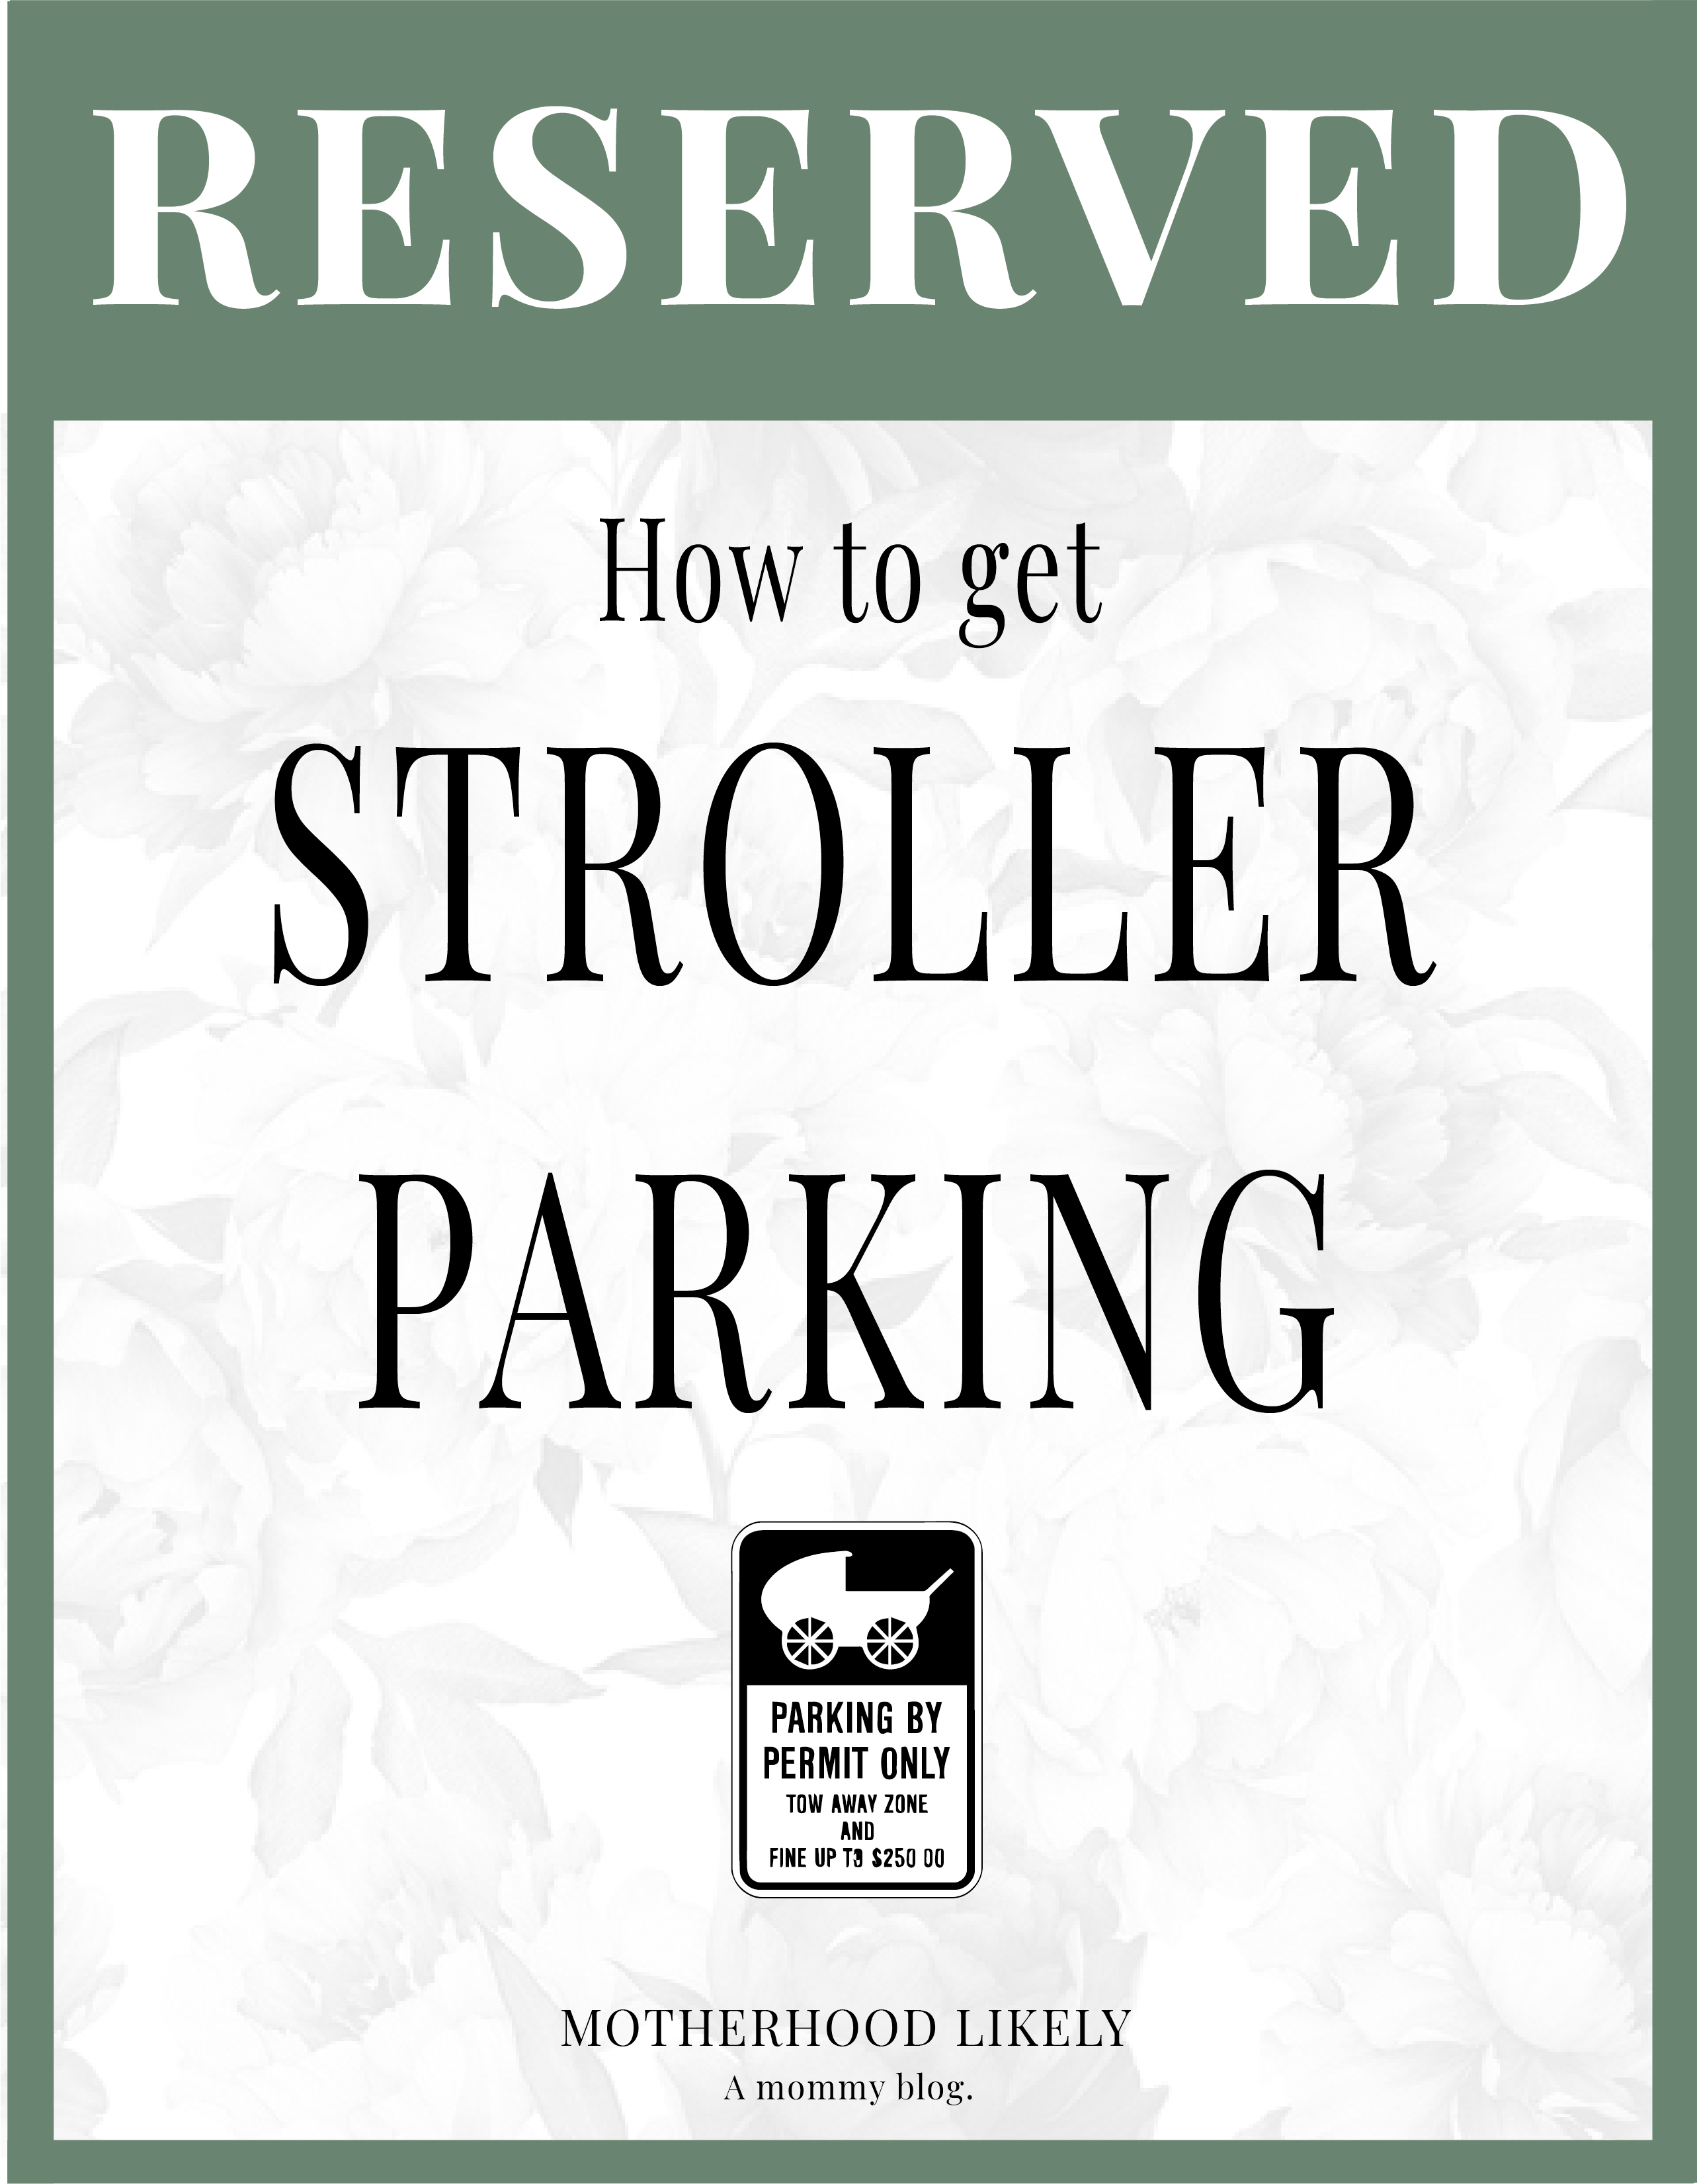 stroller parking permit sign